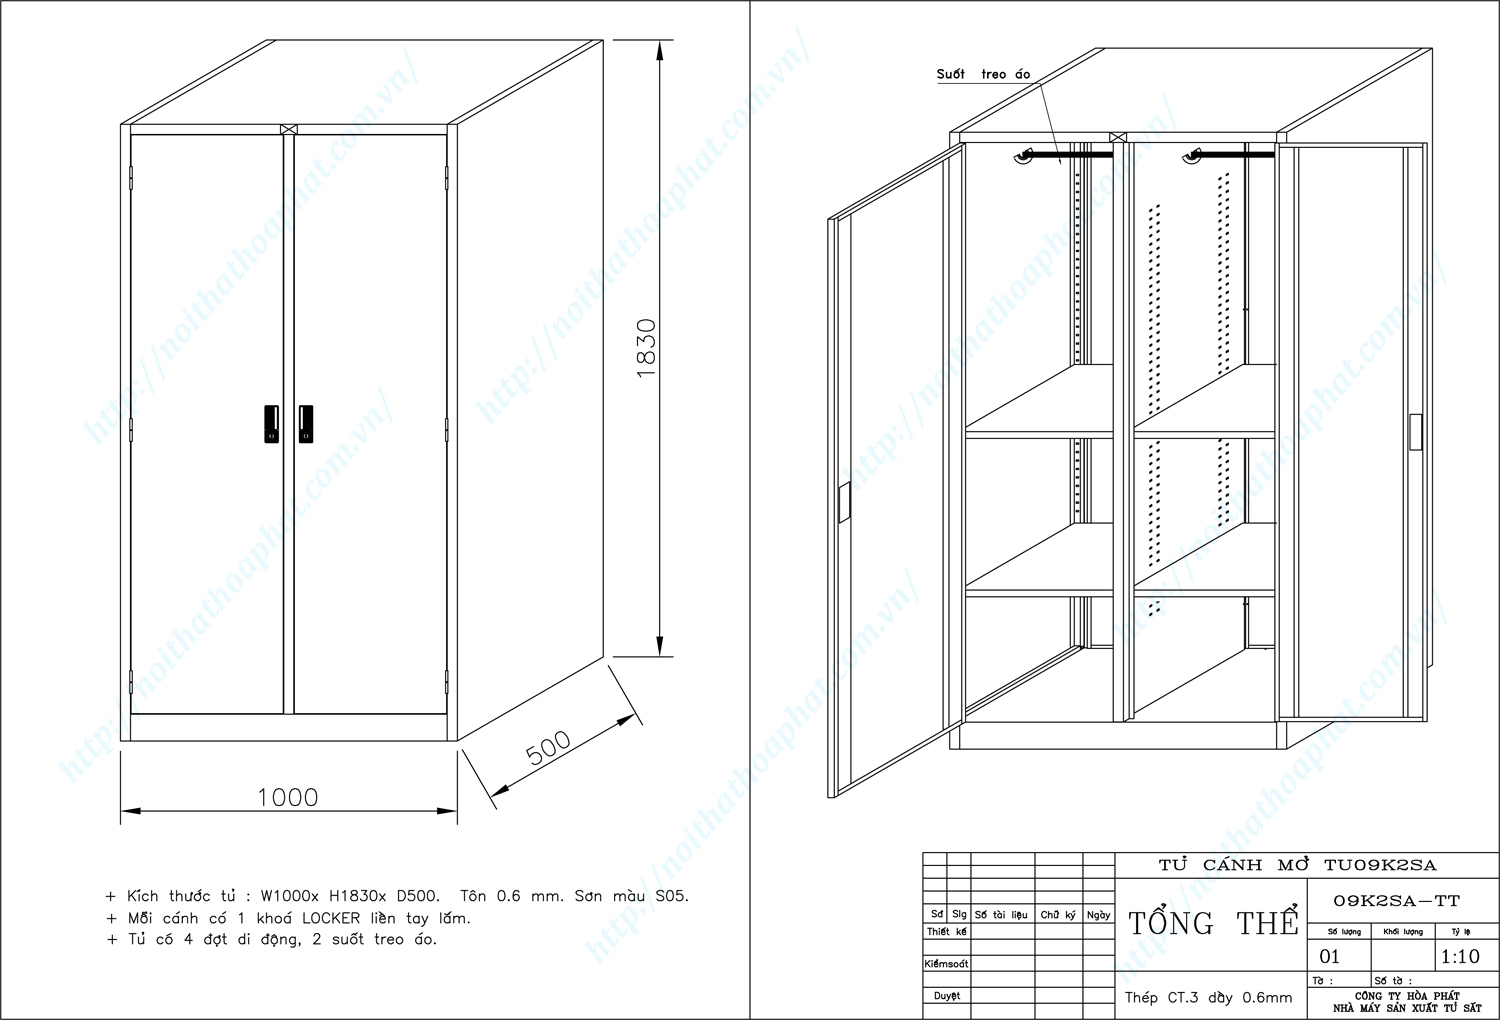 Bản vẽ kỹ thuật thiết kế tủ sắt sơn tĩnh điện TU09K2SA